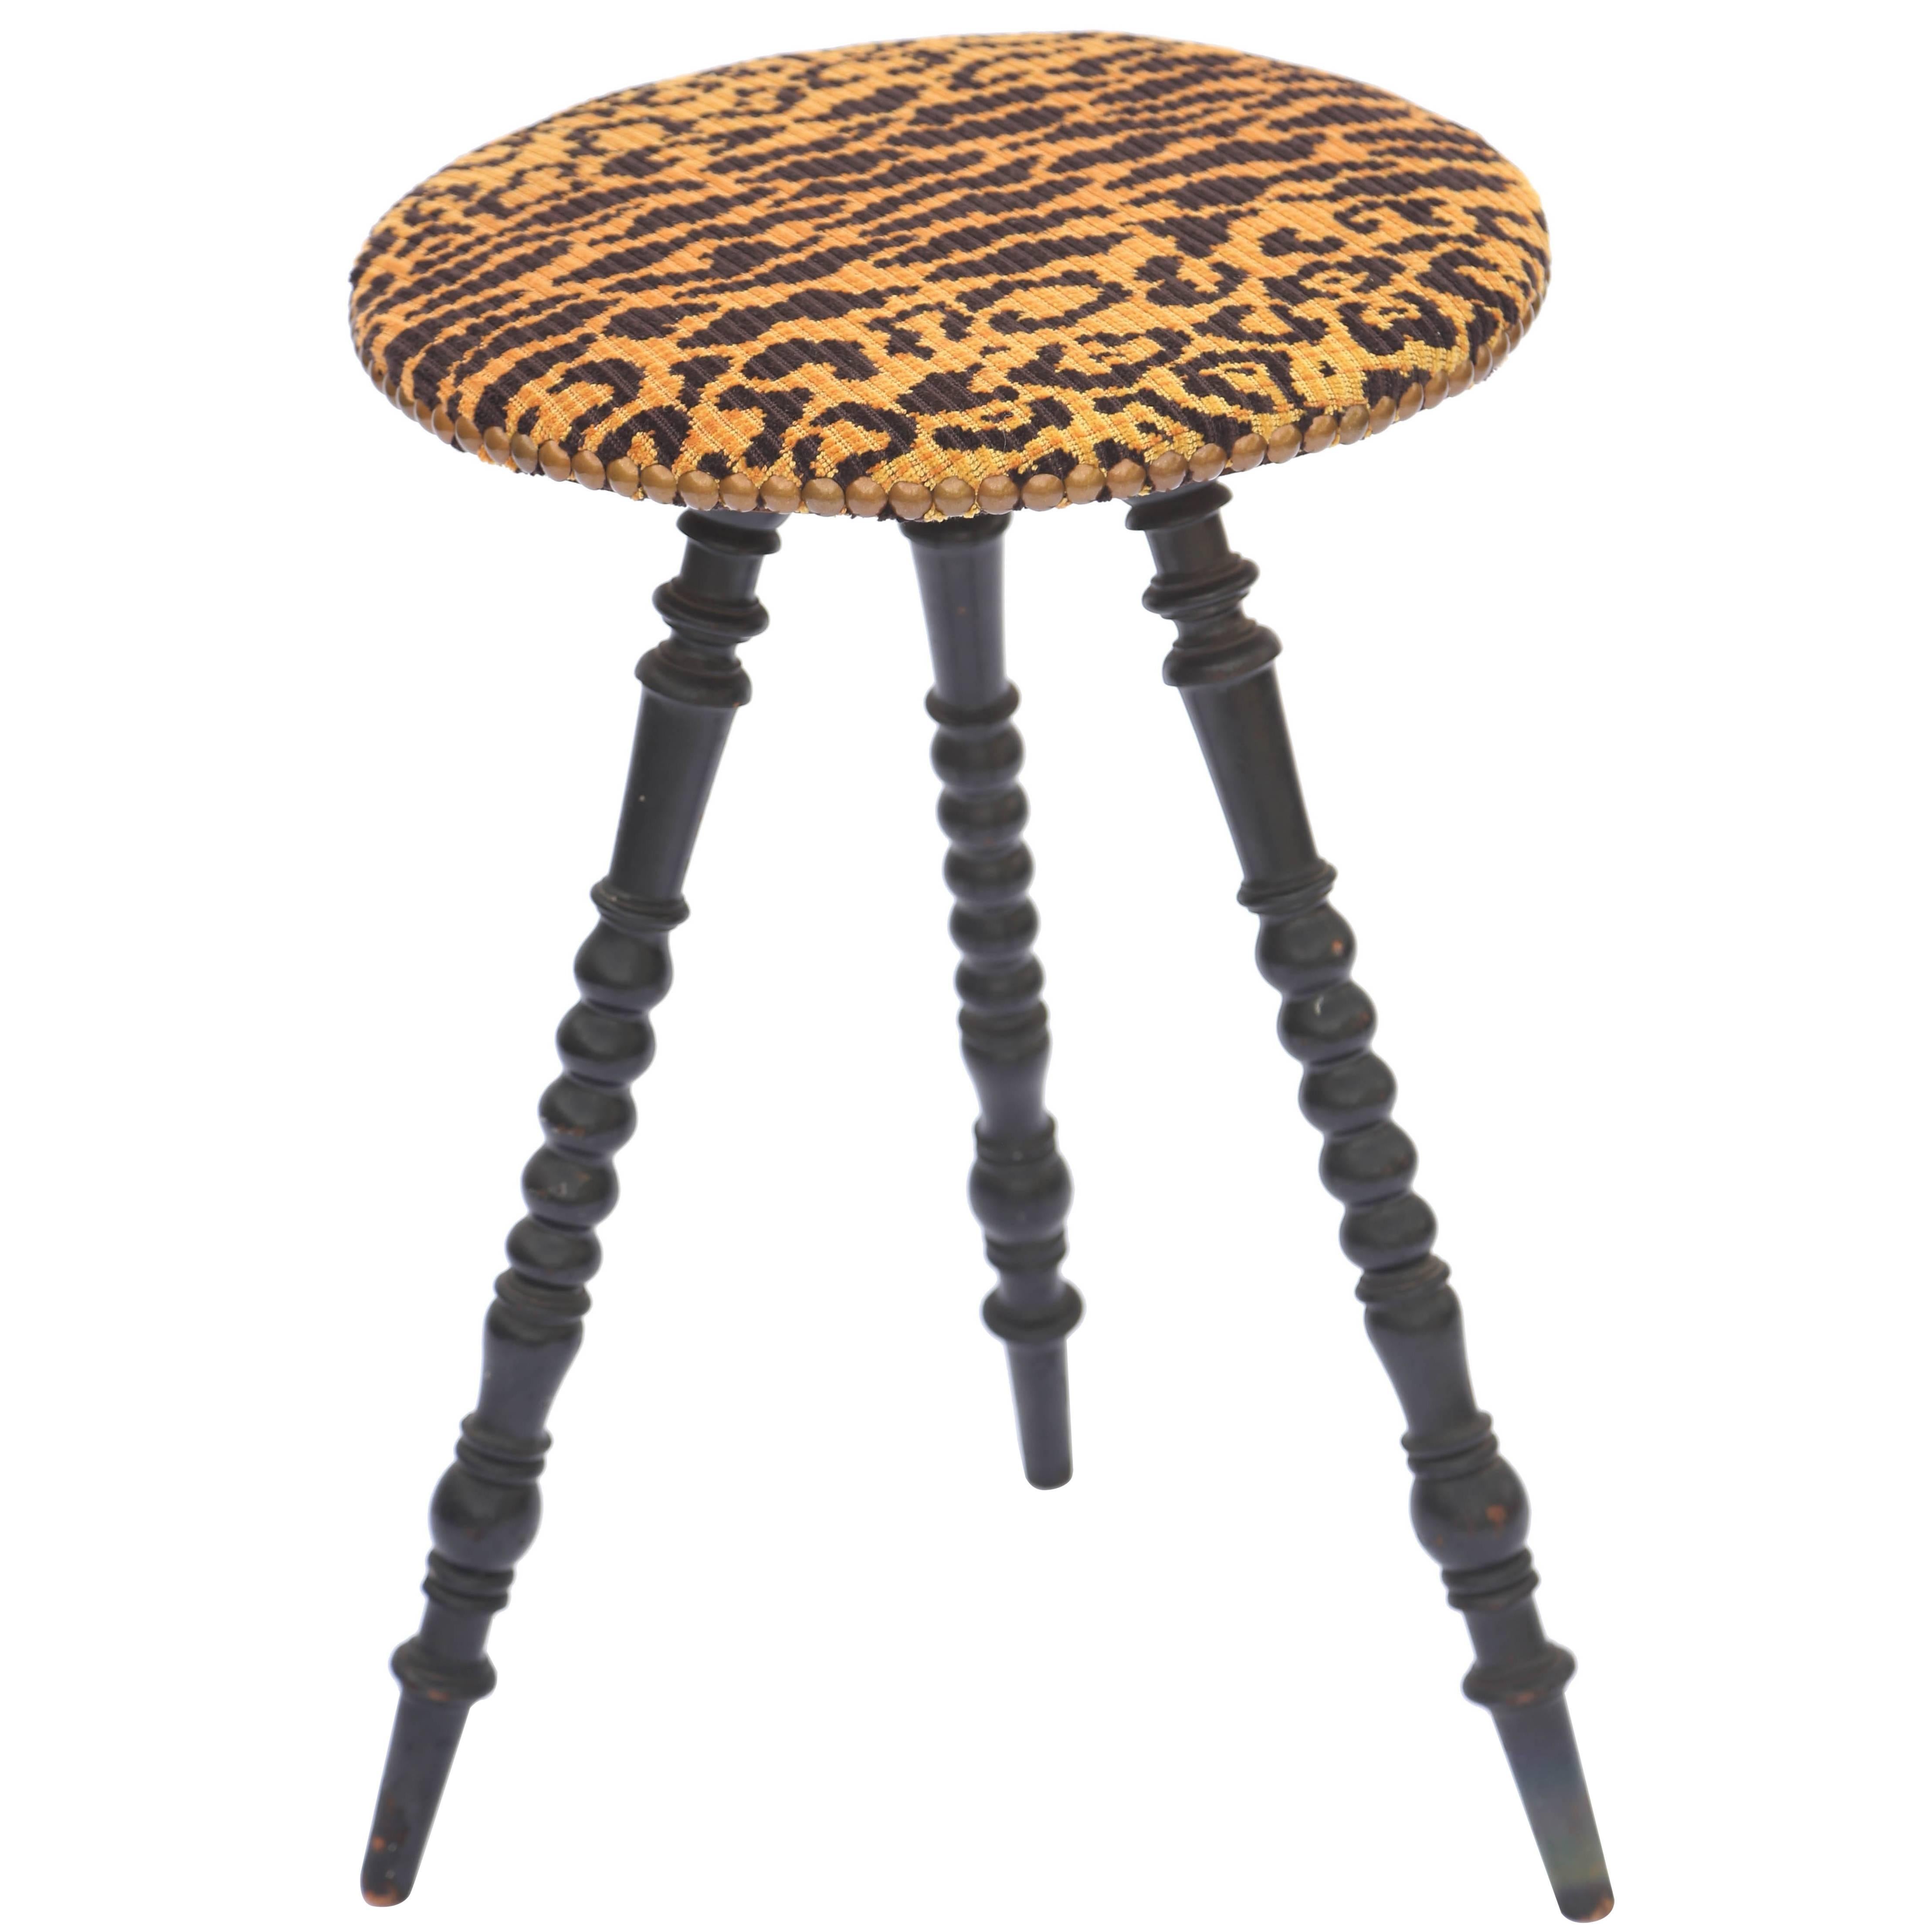 Viktorianischer Dreibein-Tisch mit gedrechselten Beinen und gepolsterter runder Platte in Leopardenmuster